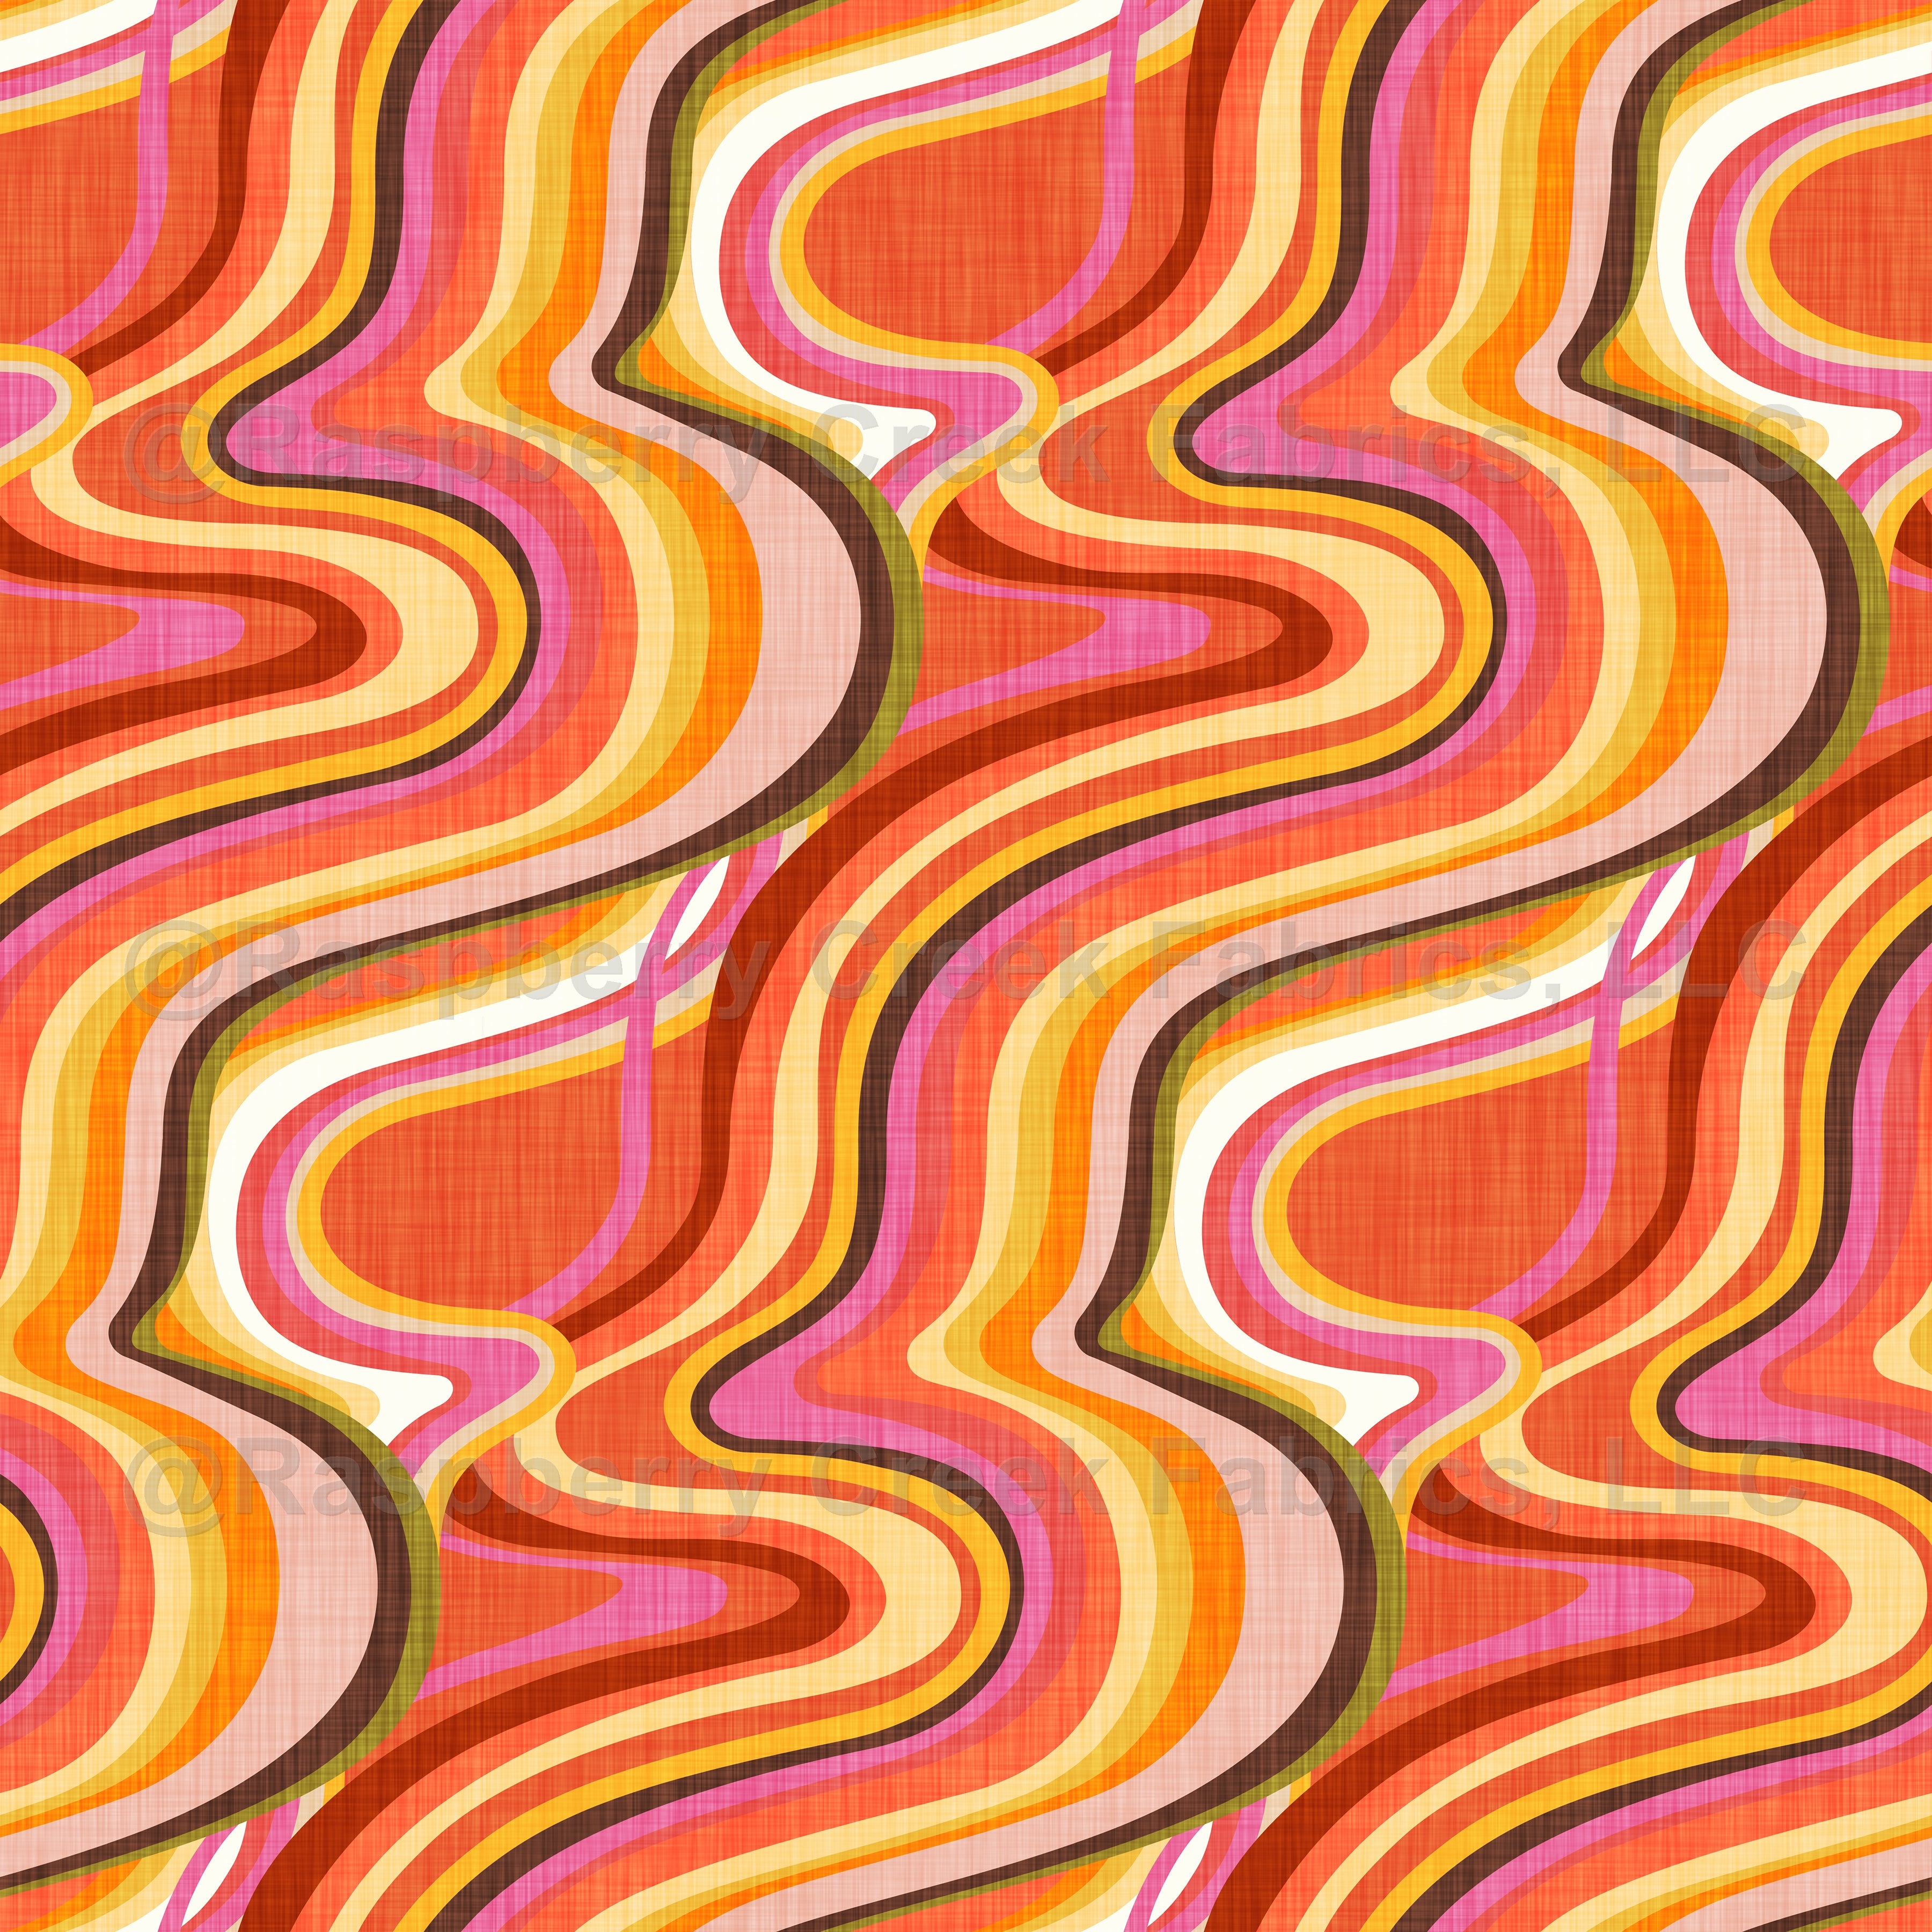 Vải với họa tiết xoắn ốc tâm linh màu cam thập niên 70 là lựa chọn hoàn hảo cho những ai yêu thích phong cách retro và vintage. Cùng ngắm nhìn và cảm nhận sự độc đáo và bắt mắt của sản phẩm này nhé!